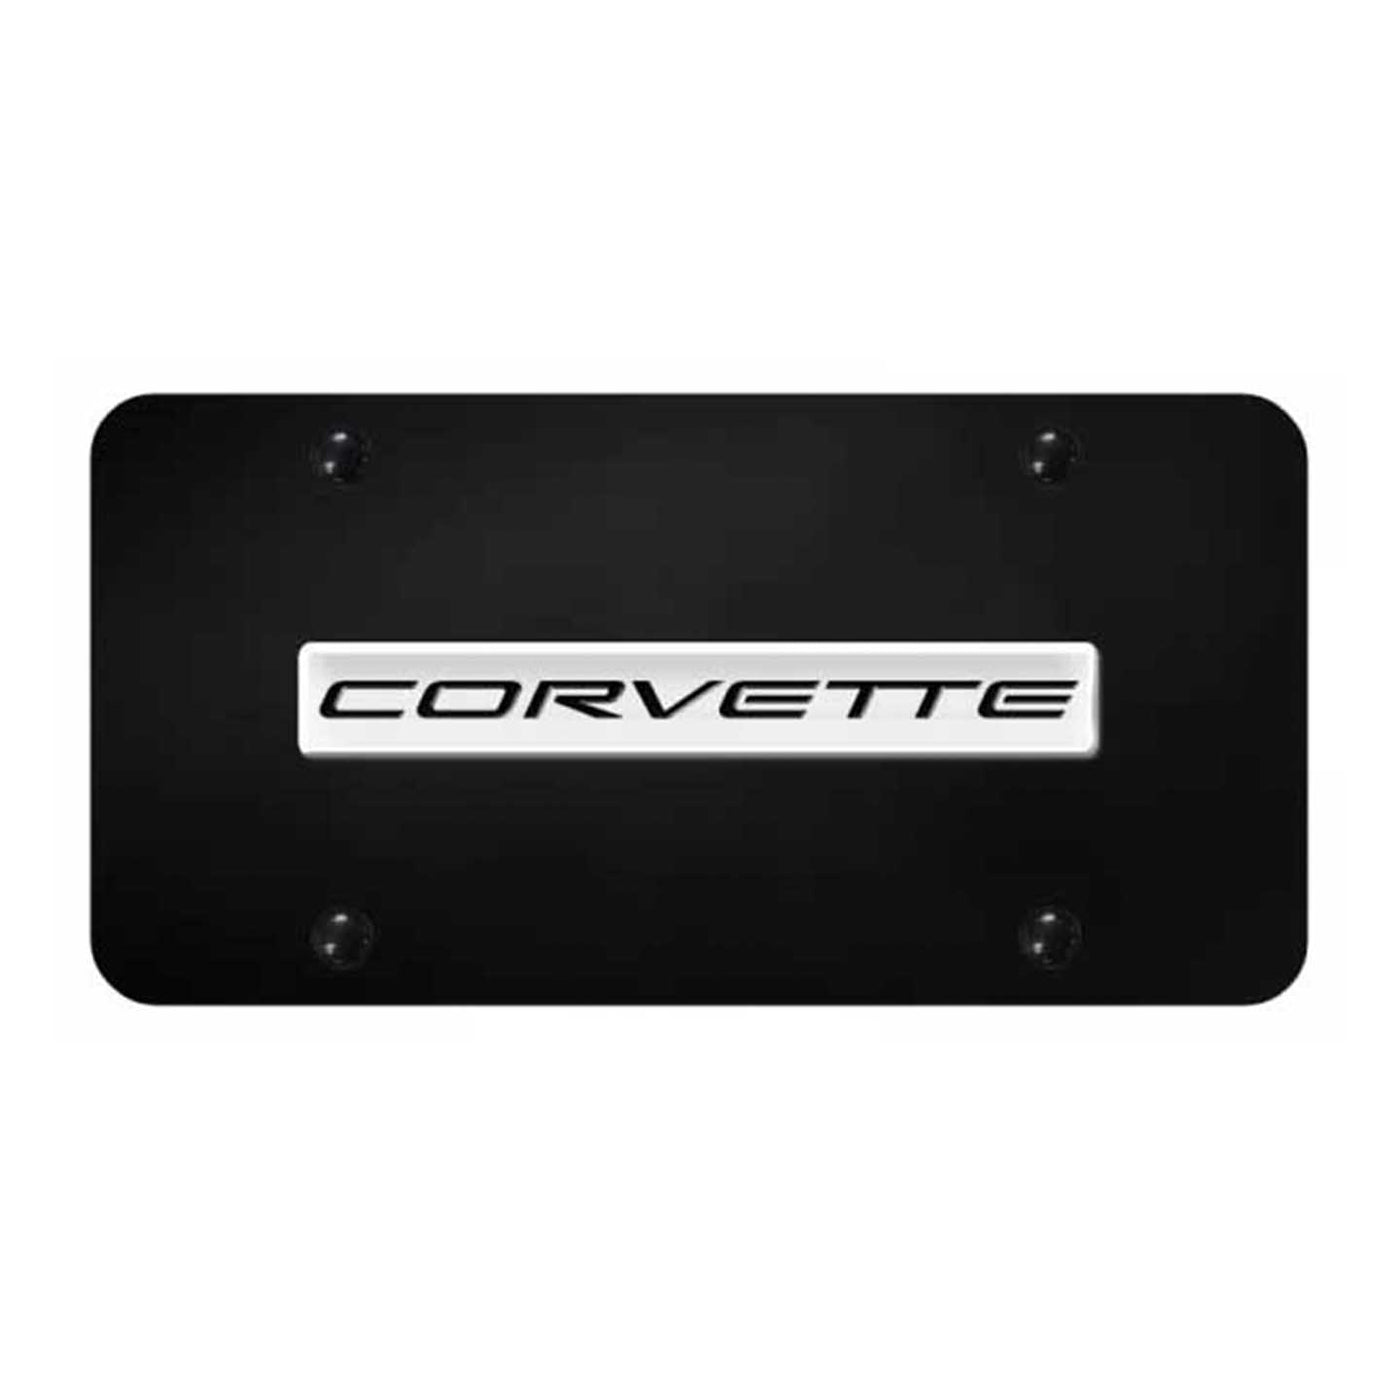 Corvette C5 Name License Plate - Chrome on Black